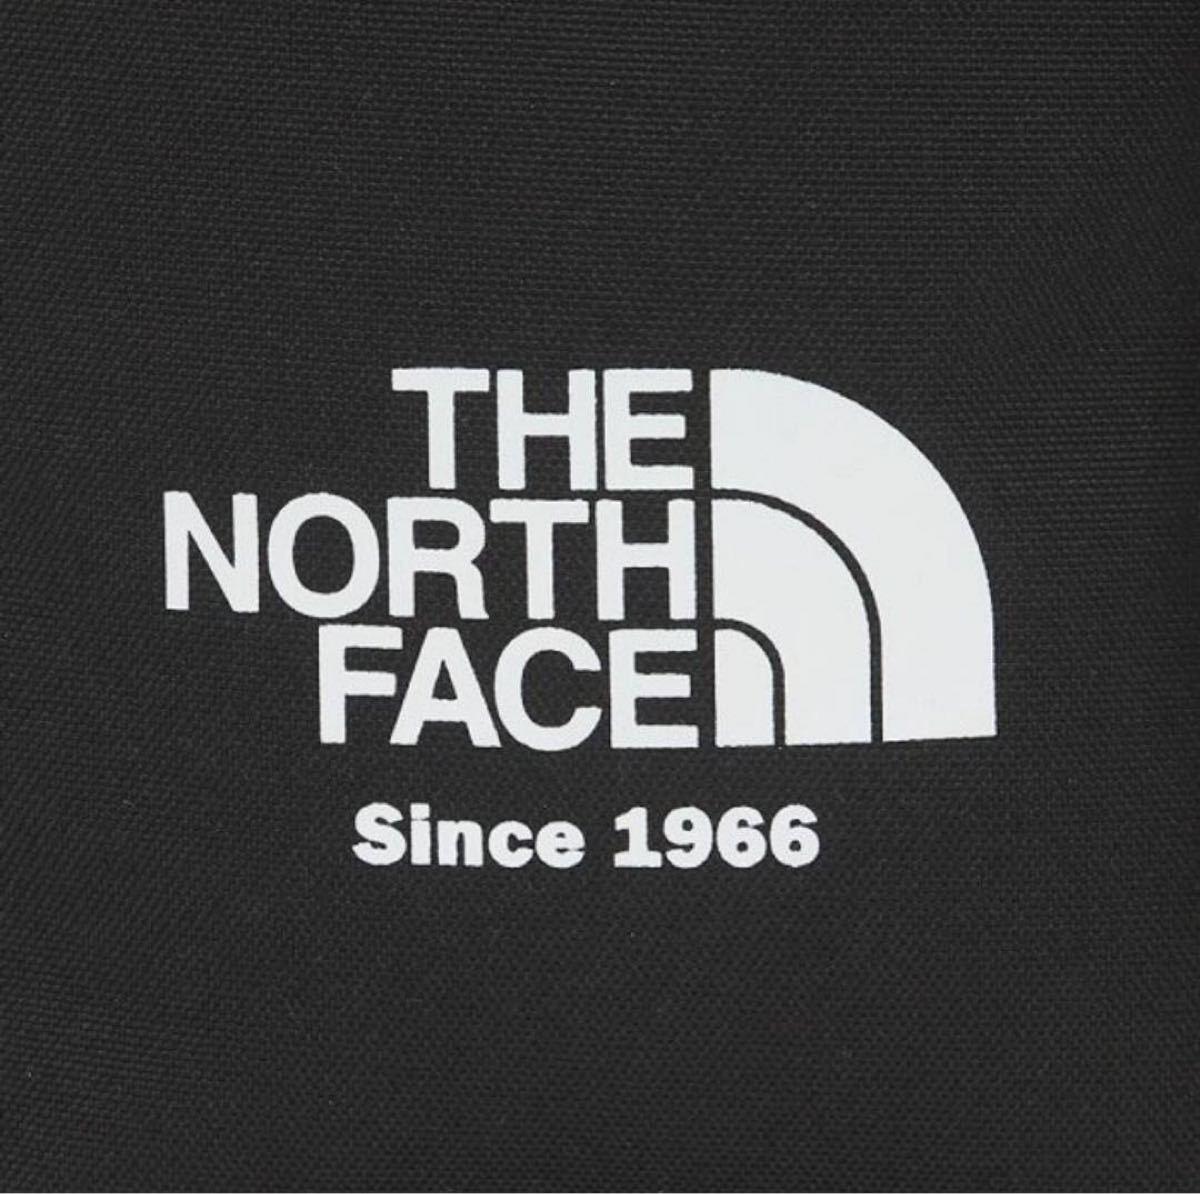 【新品】THE NORTH FACE 海外限定モデル　ノースフェイス　WL BUCKET BAG MINI （黒）